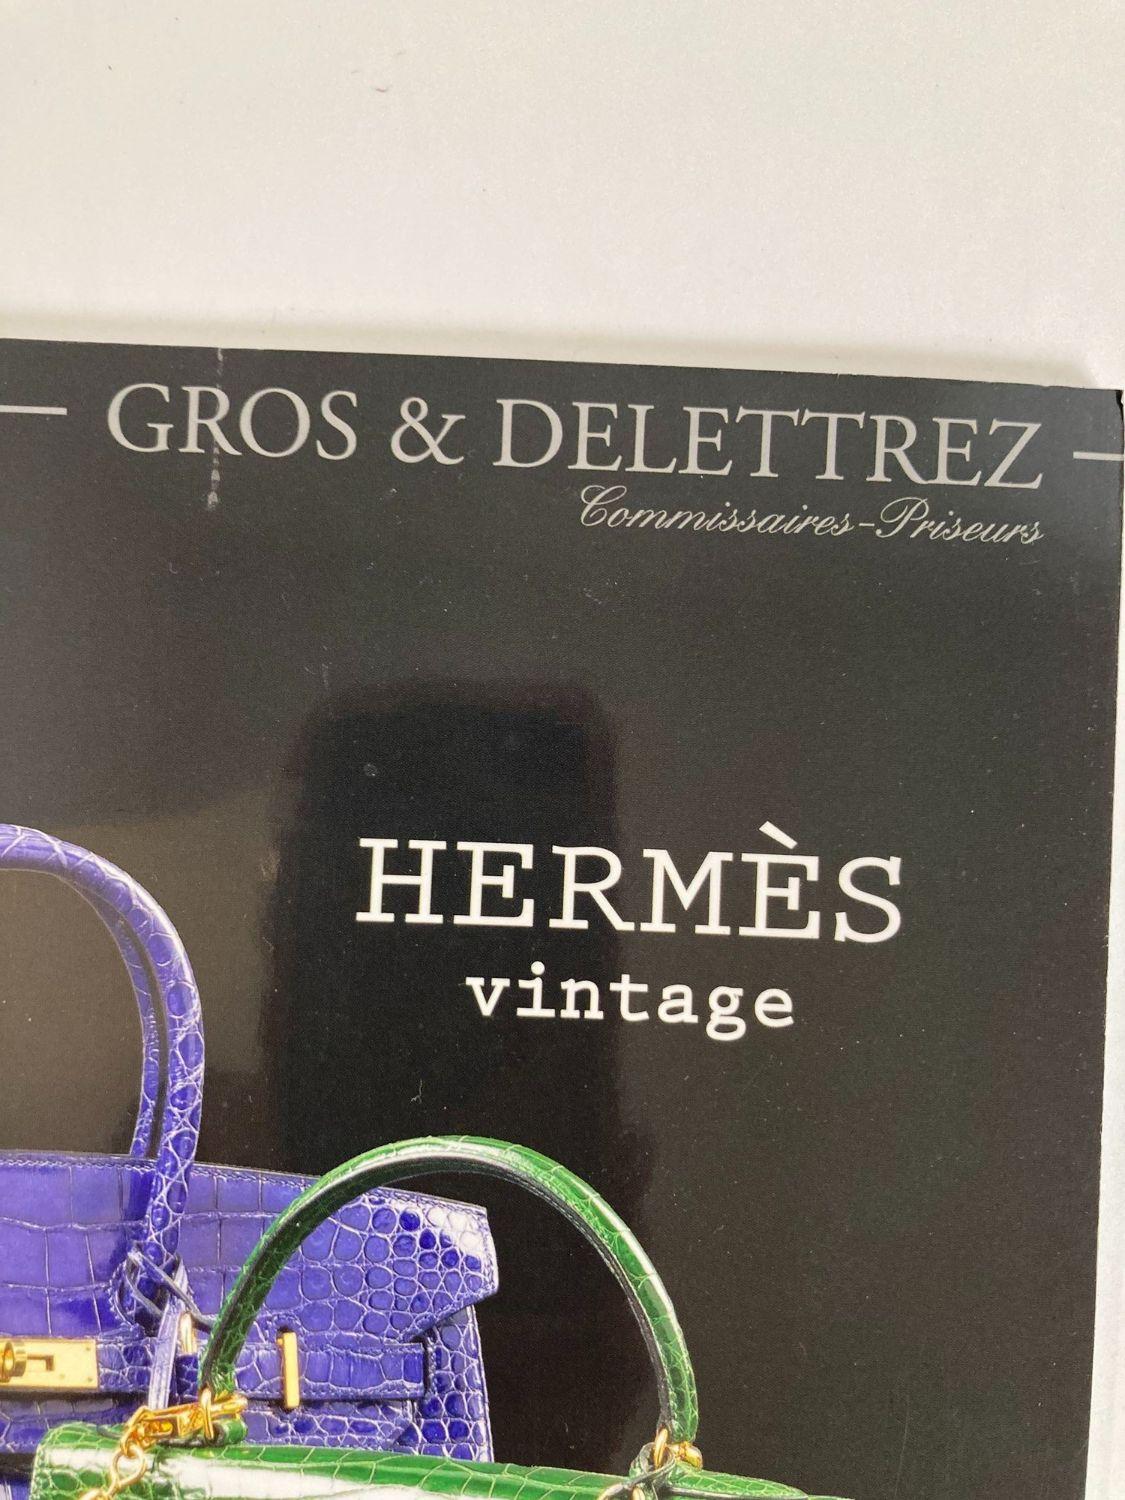 Contemporary Hermes Vintage Paris Auction Catalog 2018 Published by Gros & Delettrez For Sale